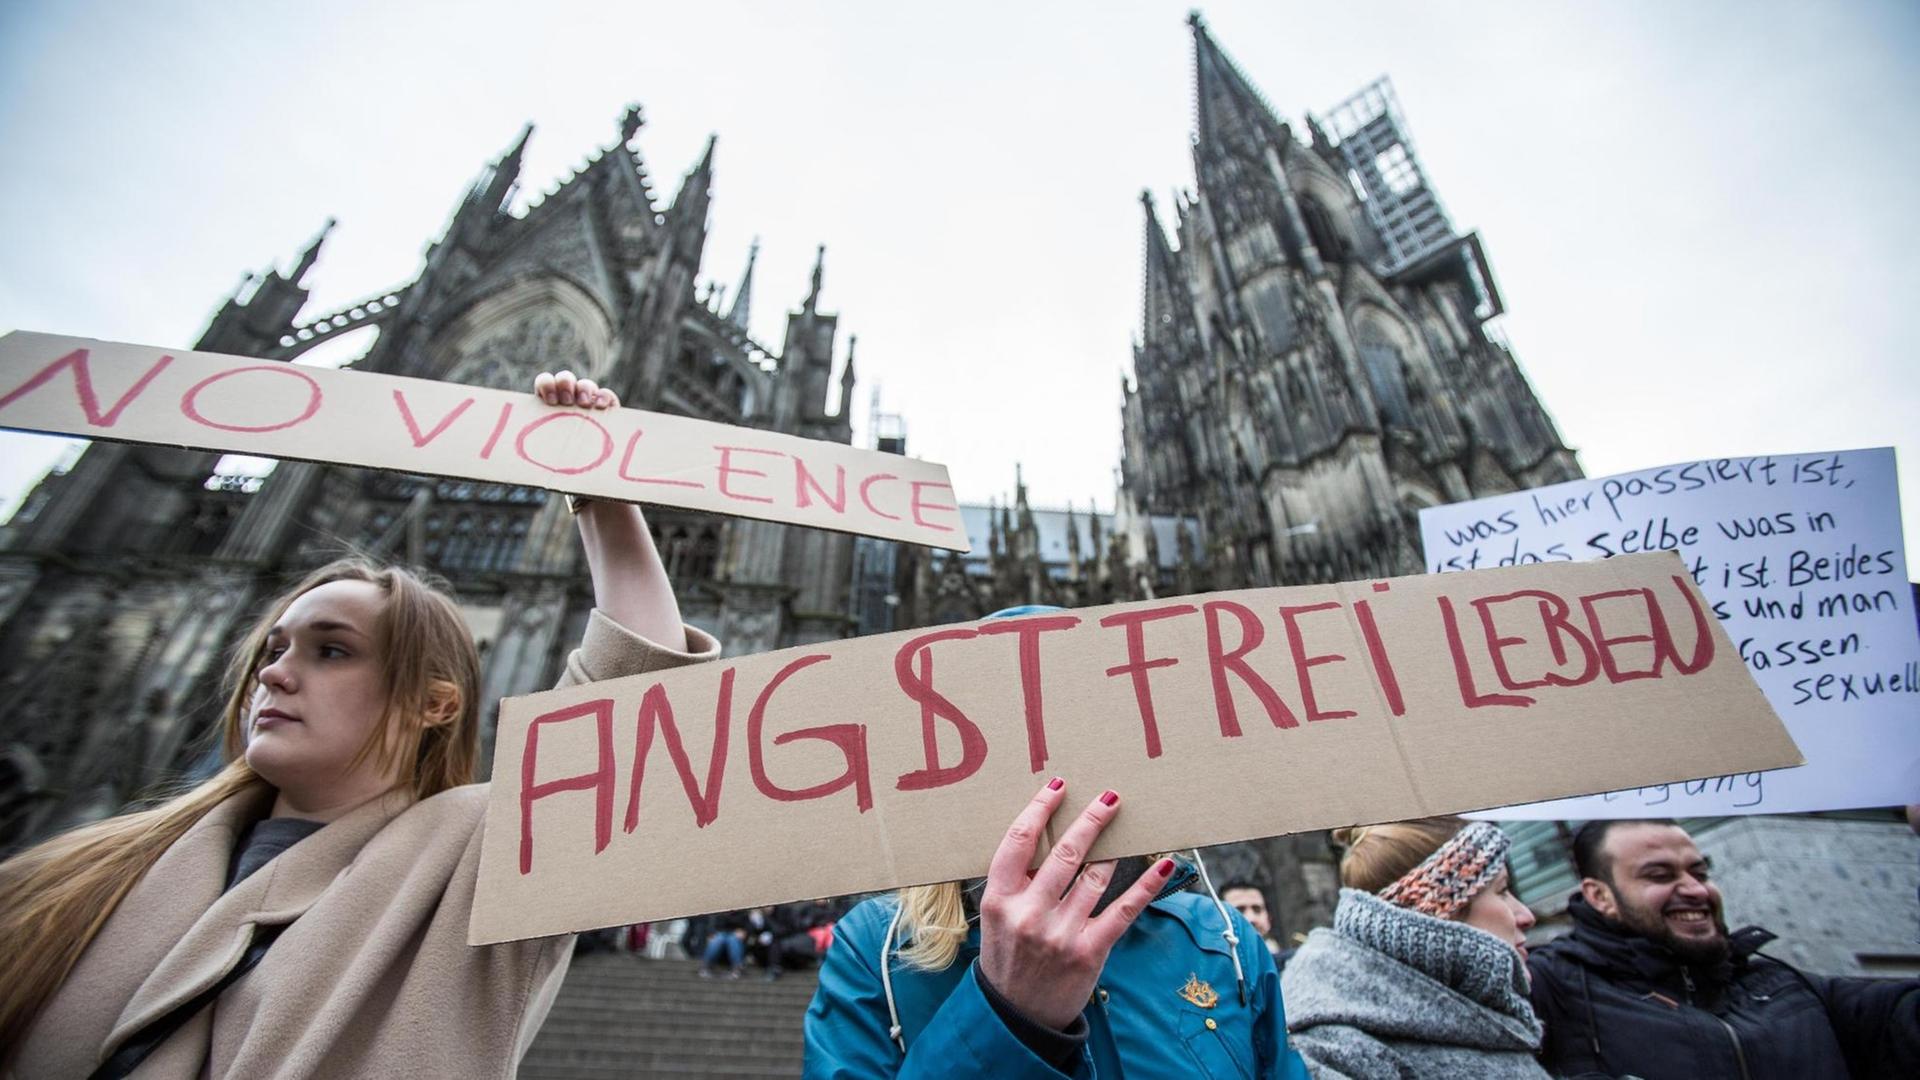 Eine Frau protestiert am 10.01.2016 in Köln vor dem Hauptbahnhof und dem Dom gegen sexuelle Gewalt mit einem Plakat "Angstfrei leben".